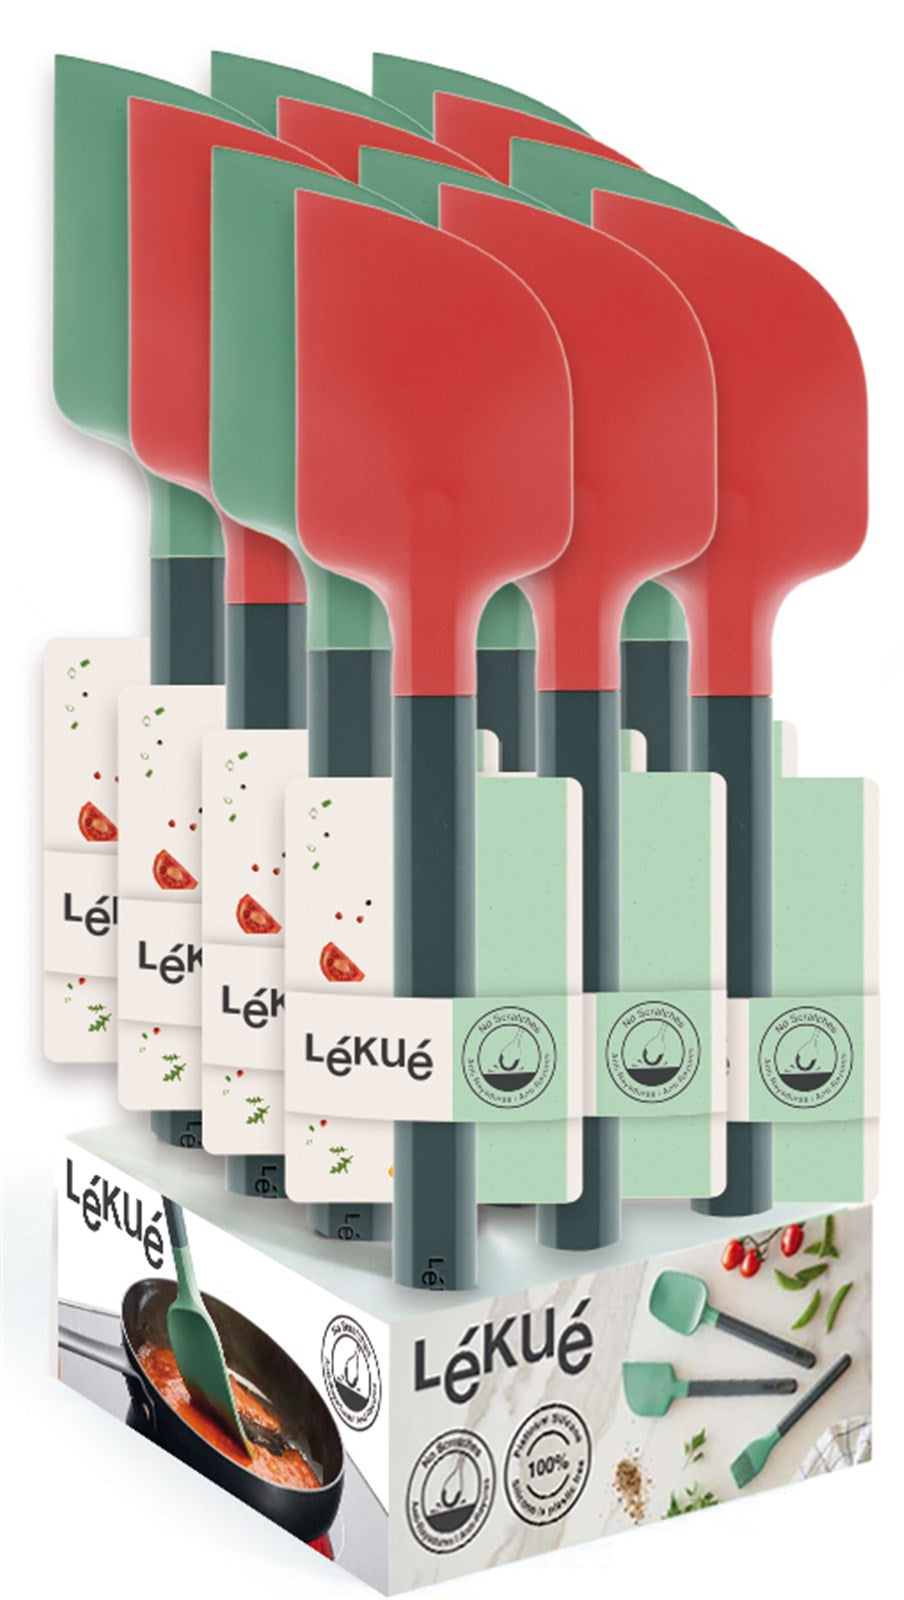 Display Spachtel 28 mm Grün &Rot in Grün präsentiert im Onlineshop von KAQTU Design AG. Backen ist von Lékué